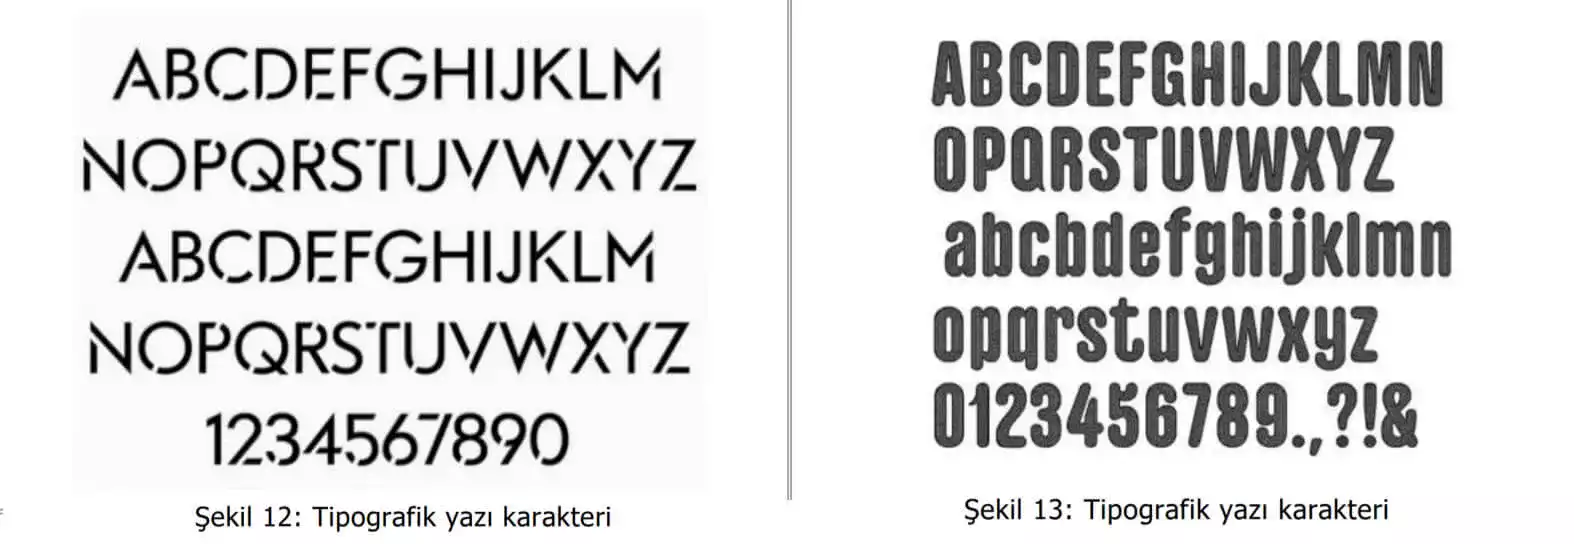 tipografik yazı karakter örnekleri-Ataşehir Web Tasarım